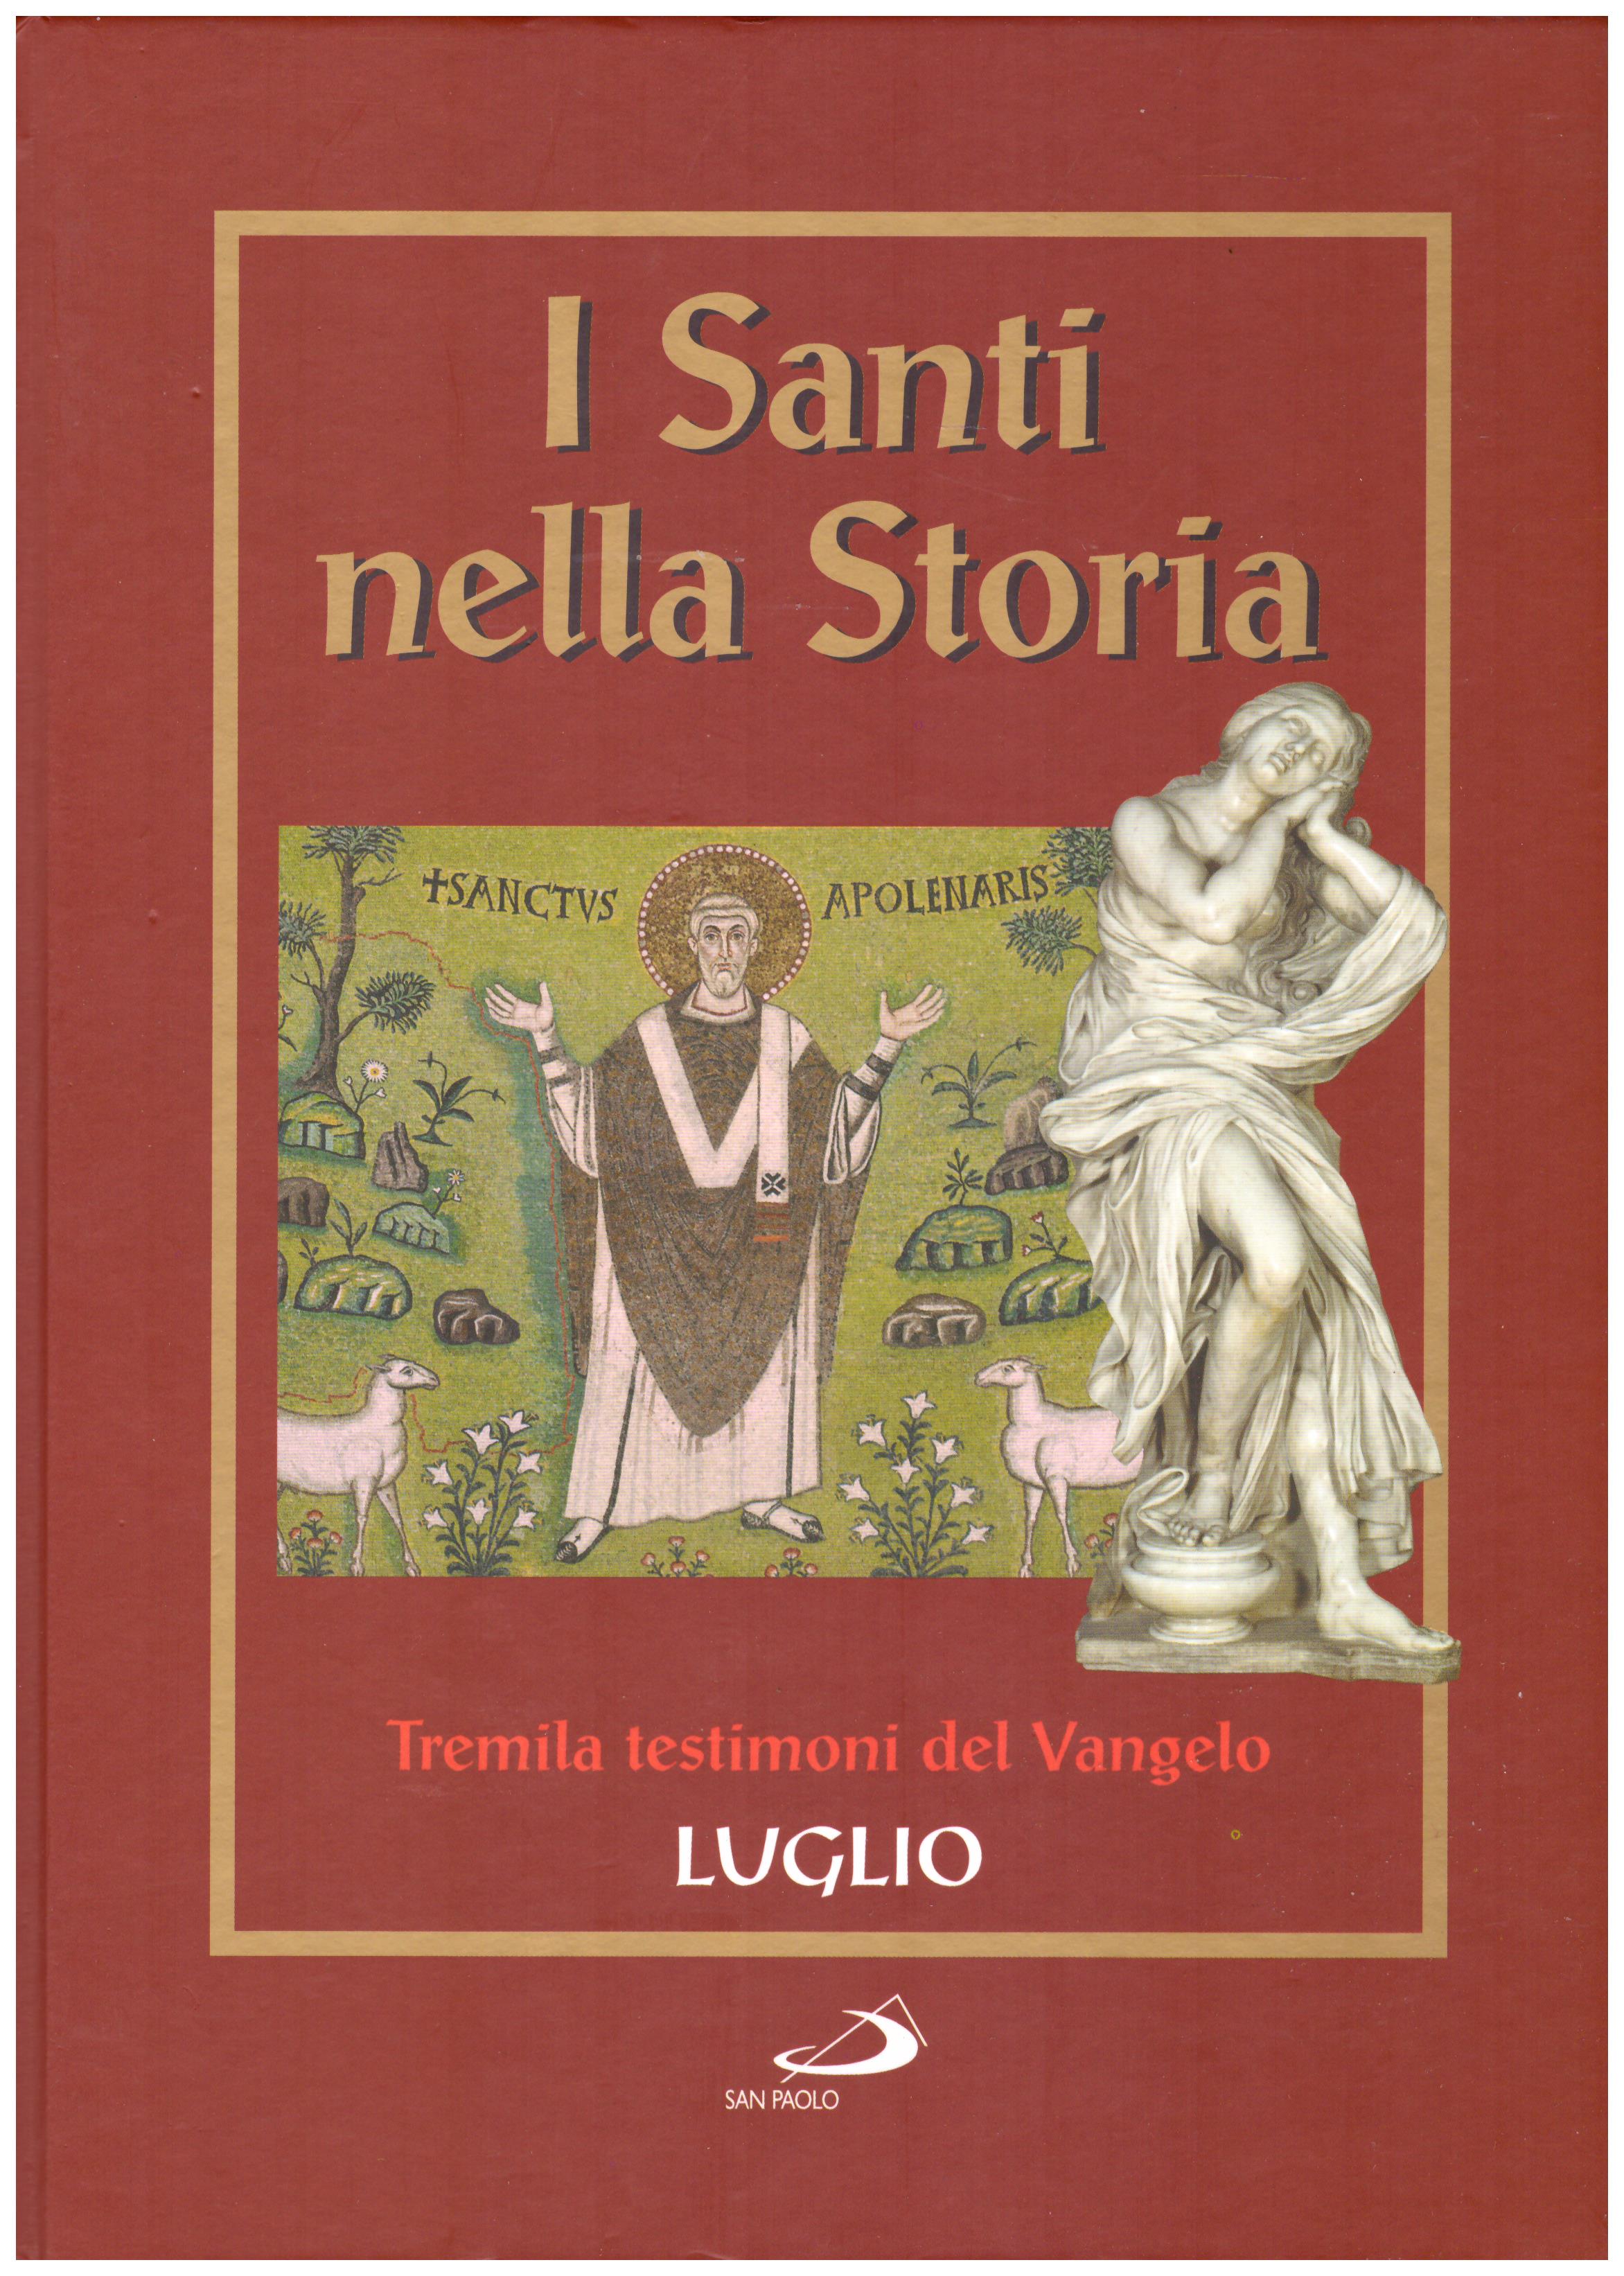 Titolo: I santi nella storia, tremila testimoni del Vangelo, Luglio Autore : AA.VV.   Editore: San Paolo 2006